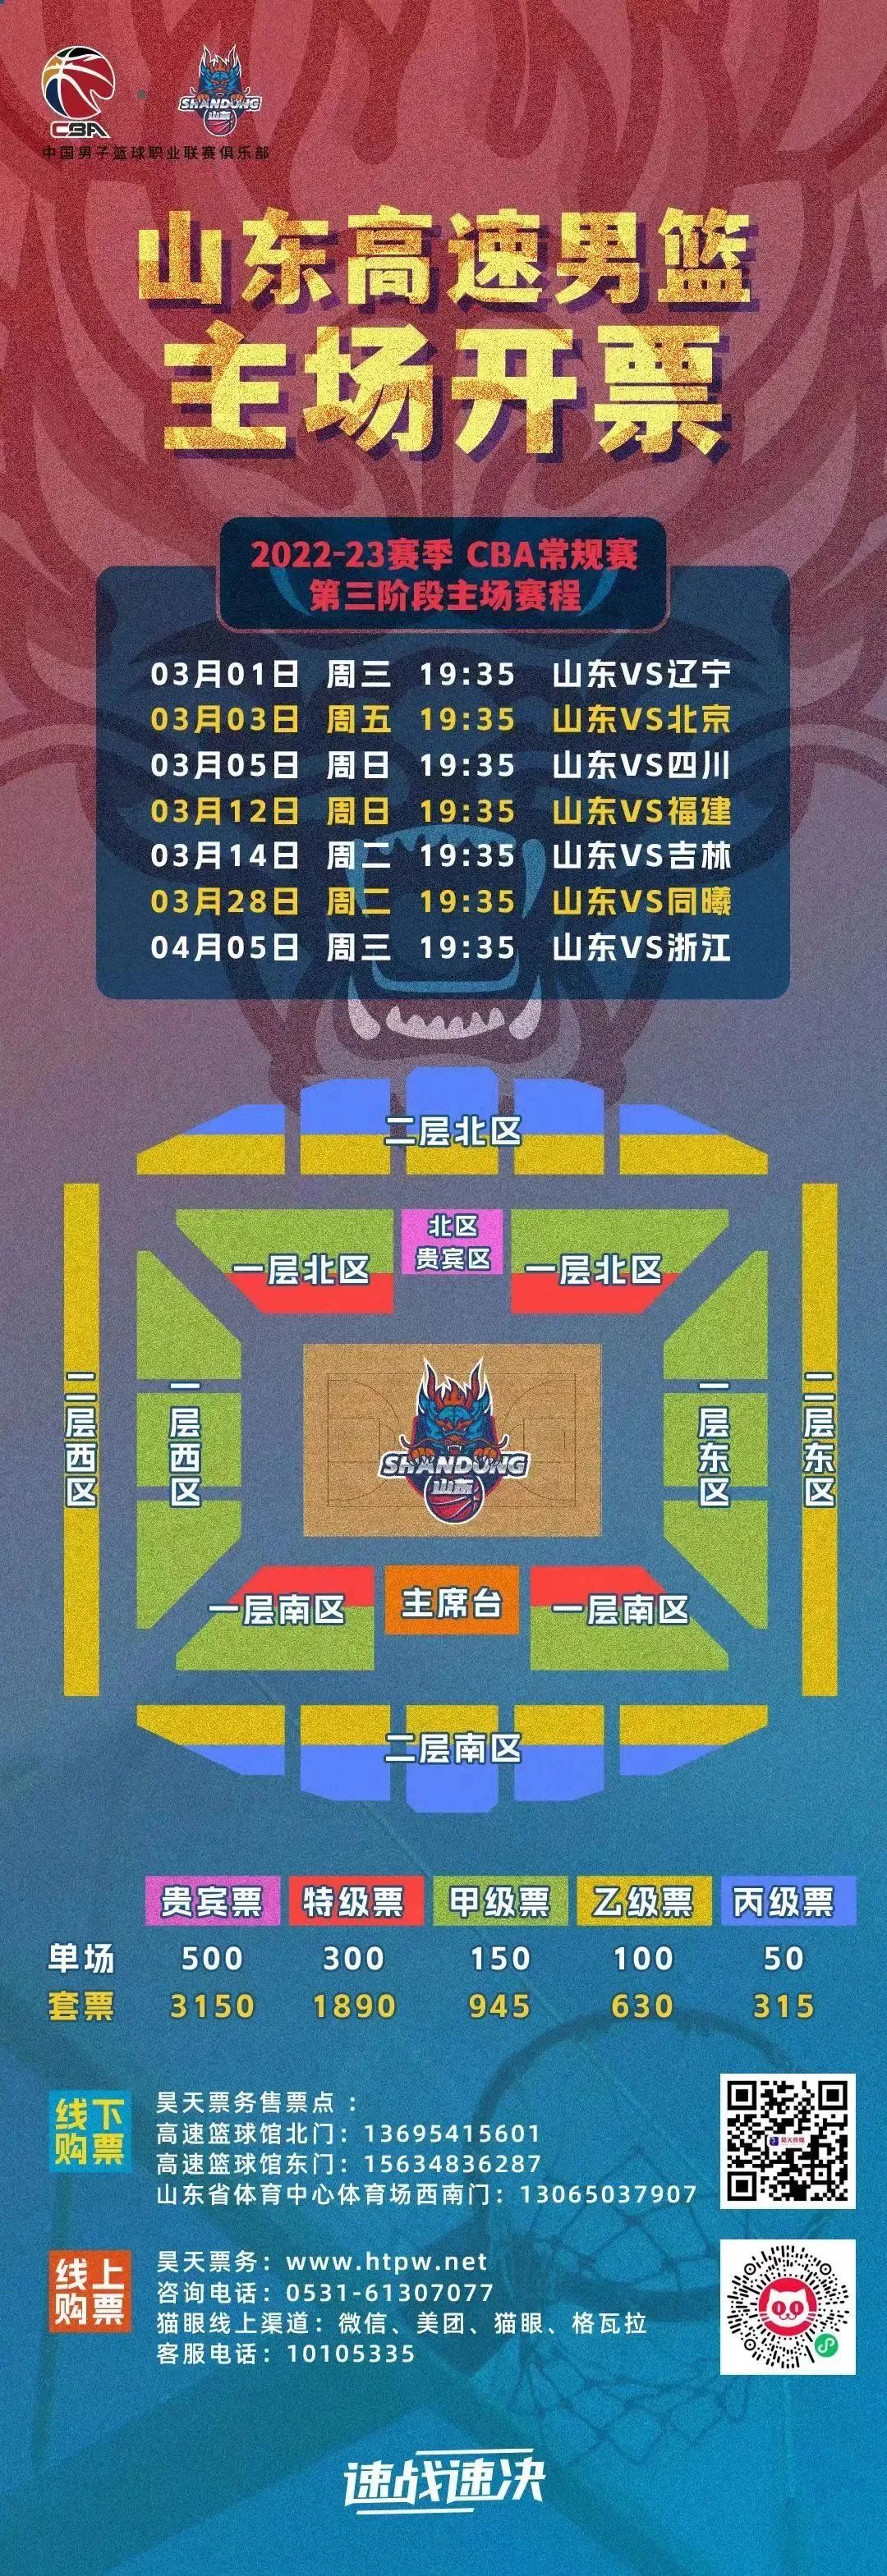 山东男篮公布第三阶段主场票价球迷可通过线下购票